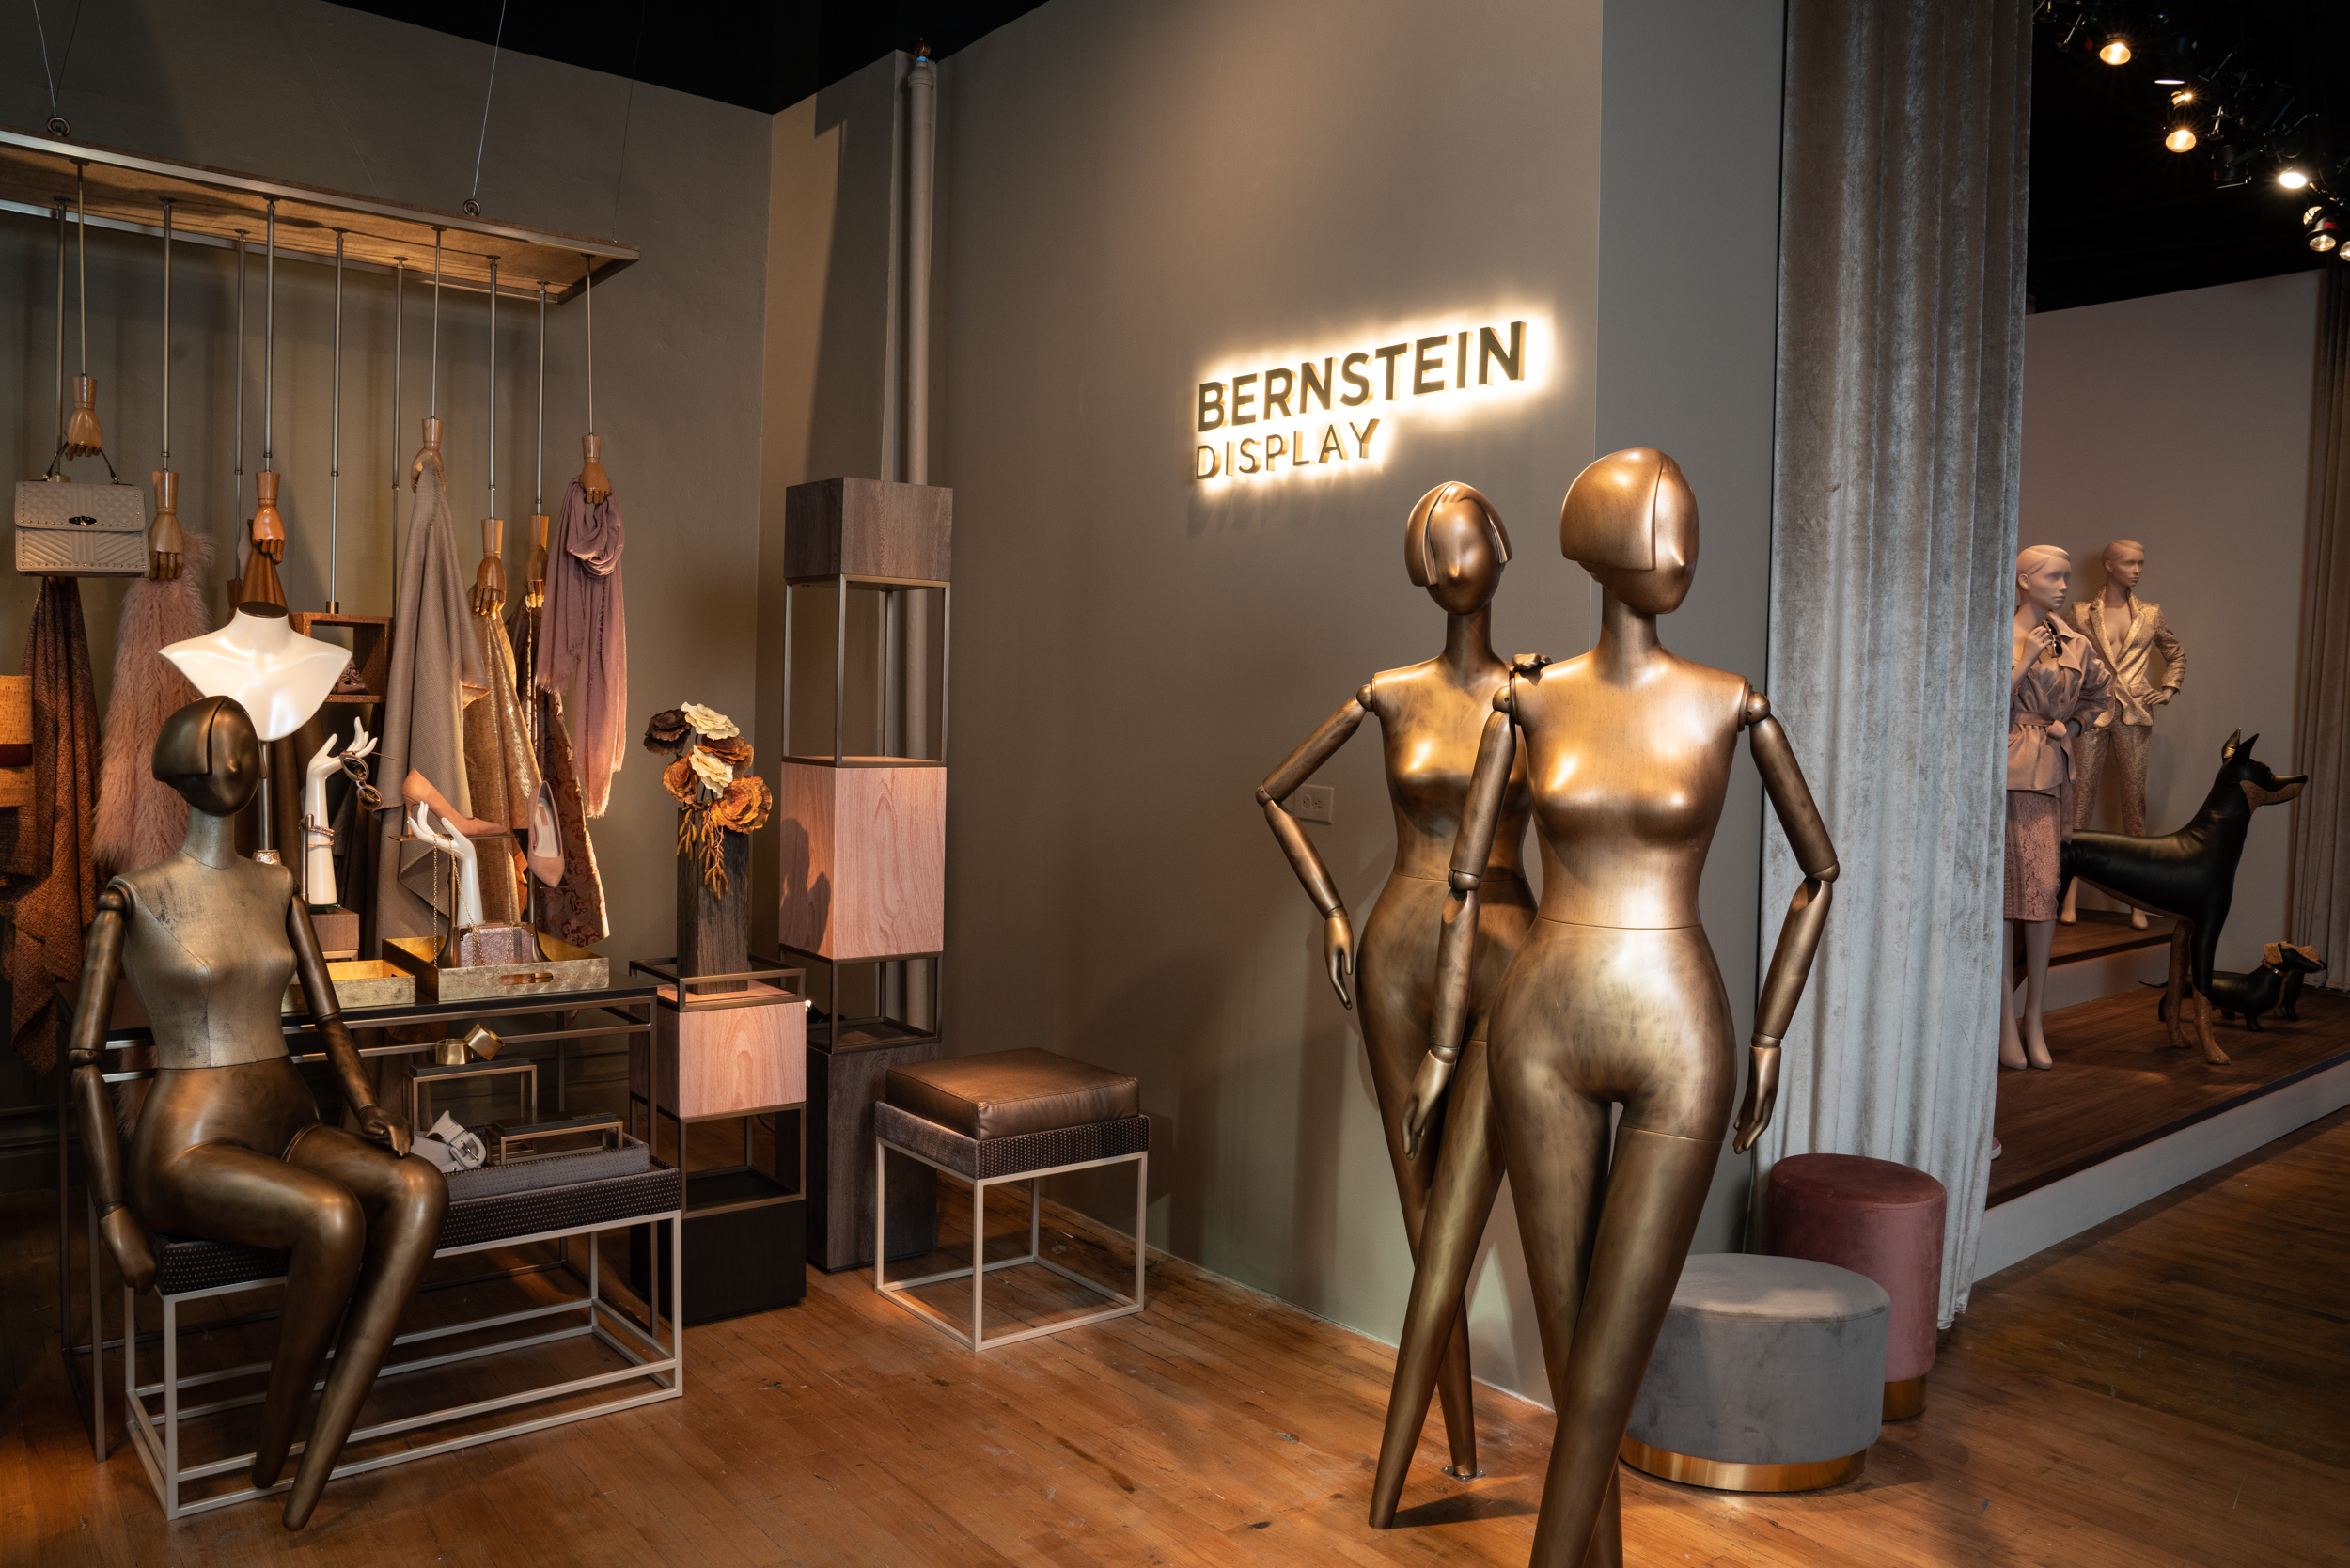 Bernstein Display show room 2018-2019